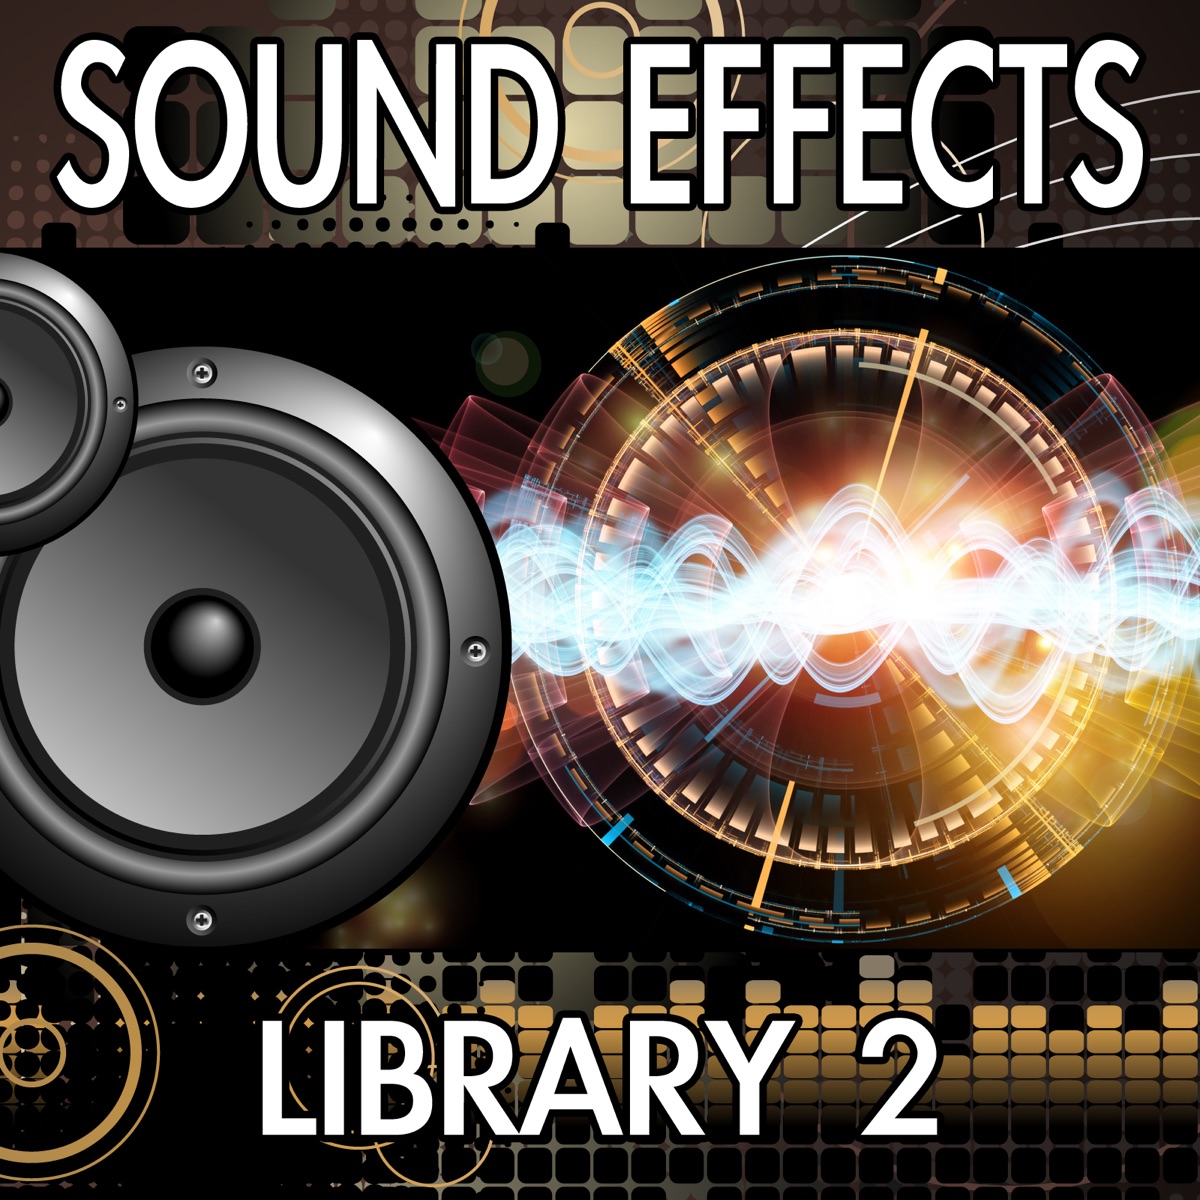 Door Hinge Sound Effects Library